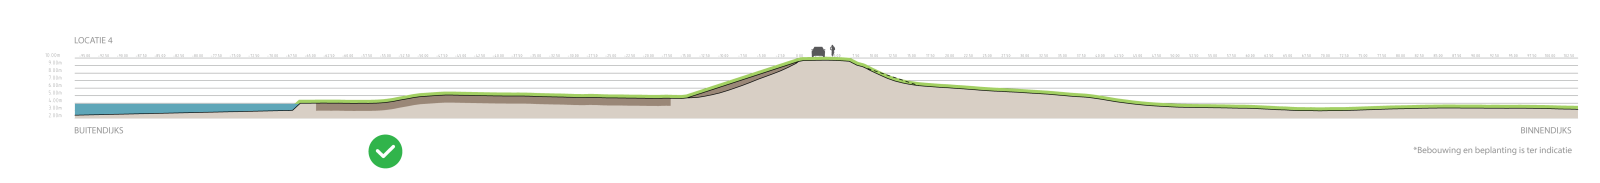 Deze afbeelding laat een doorsnede zien van de onderzochte oplossing buitendijkse grondverbetering (klei-inkassing)